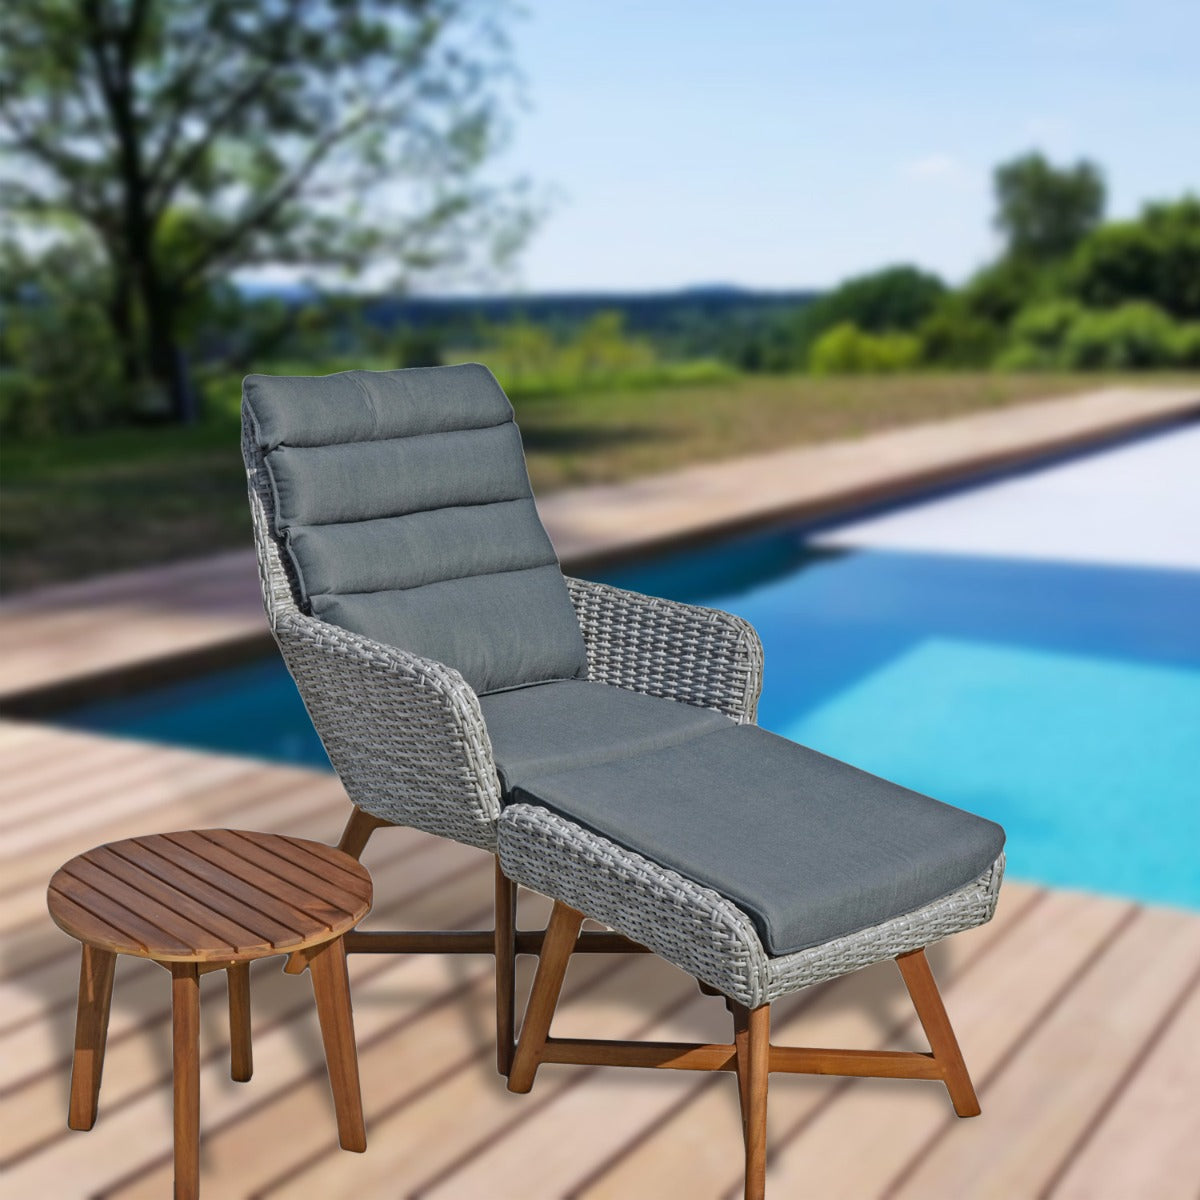 Balkon Loungemöbel Rattan Lounge-Set Sessel Hocker mit Auflagen Beistelltisch Farbe: grau